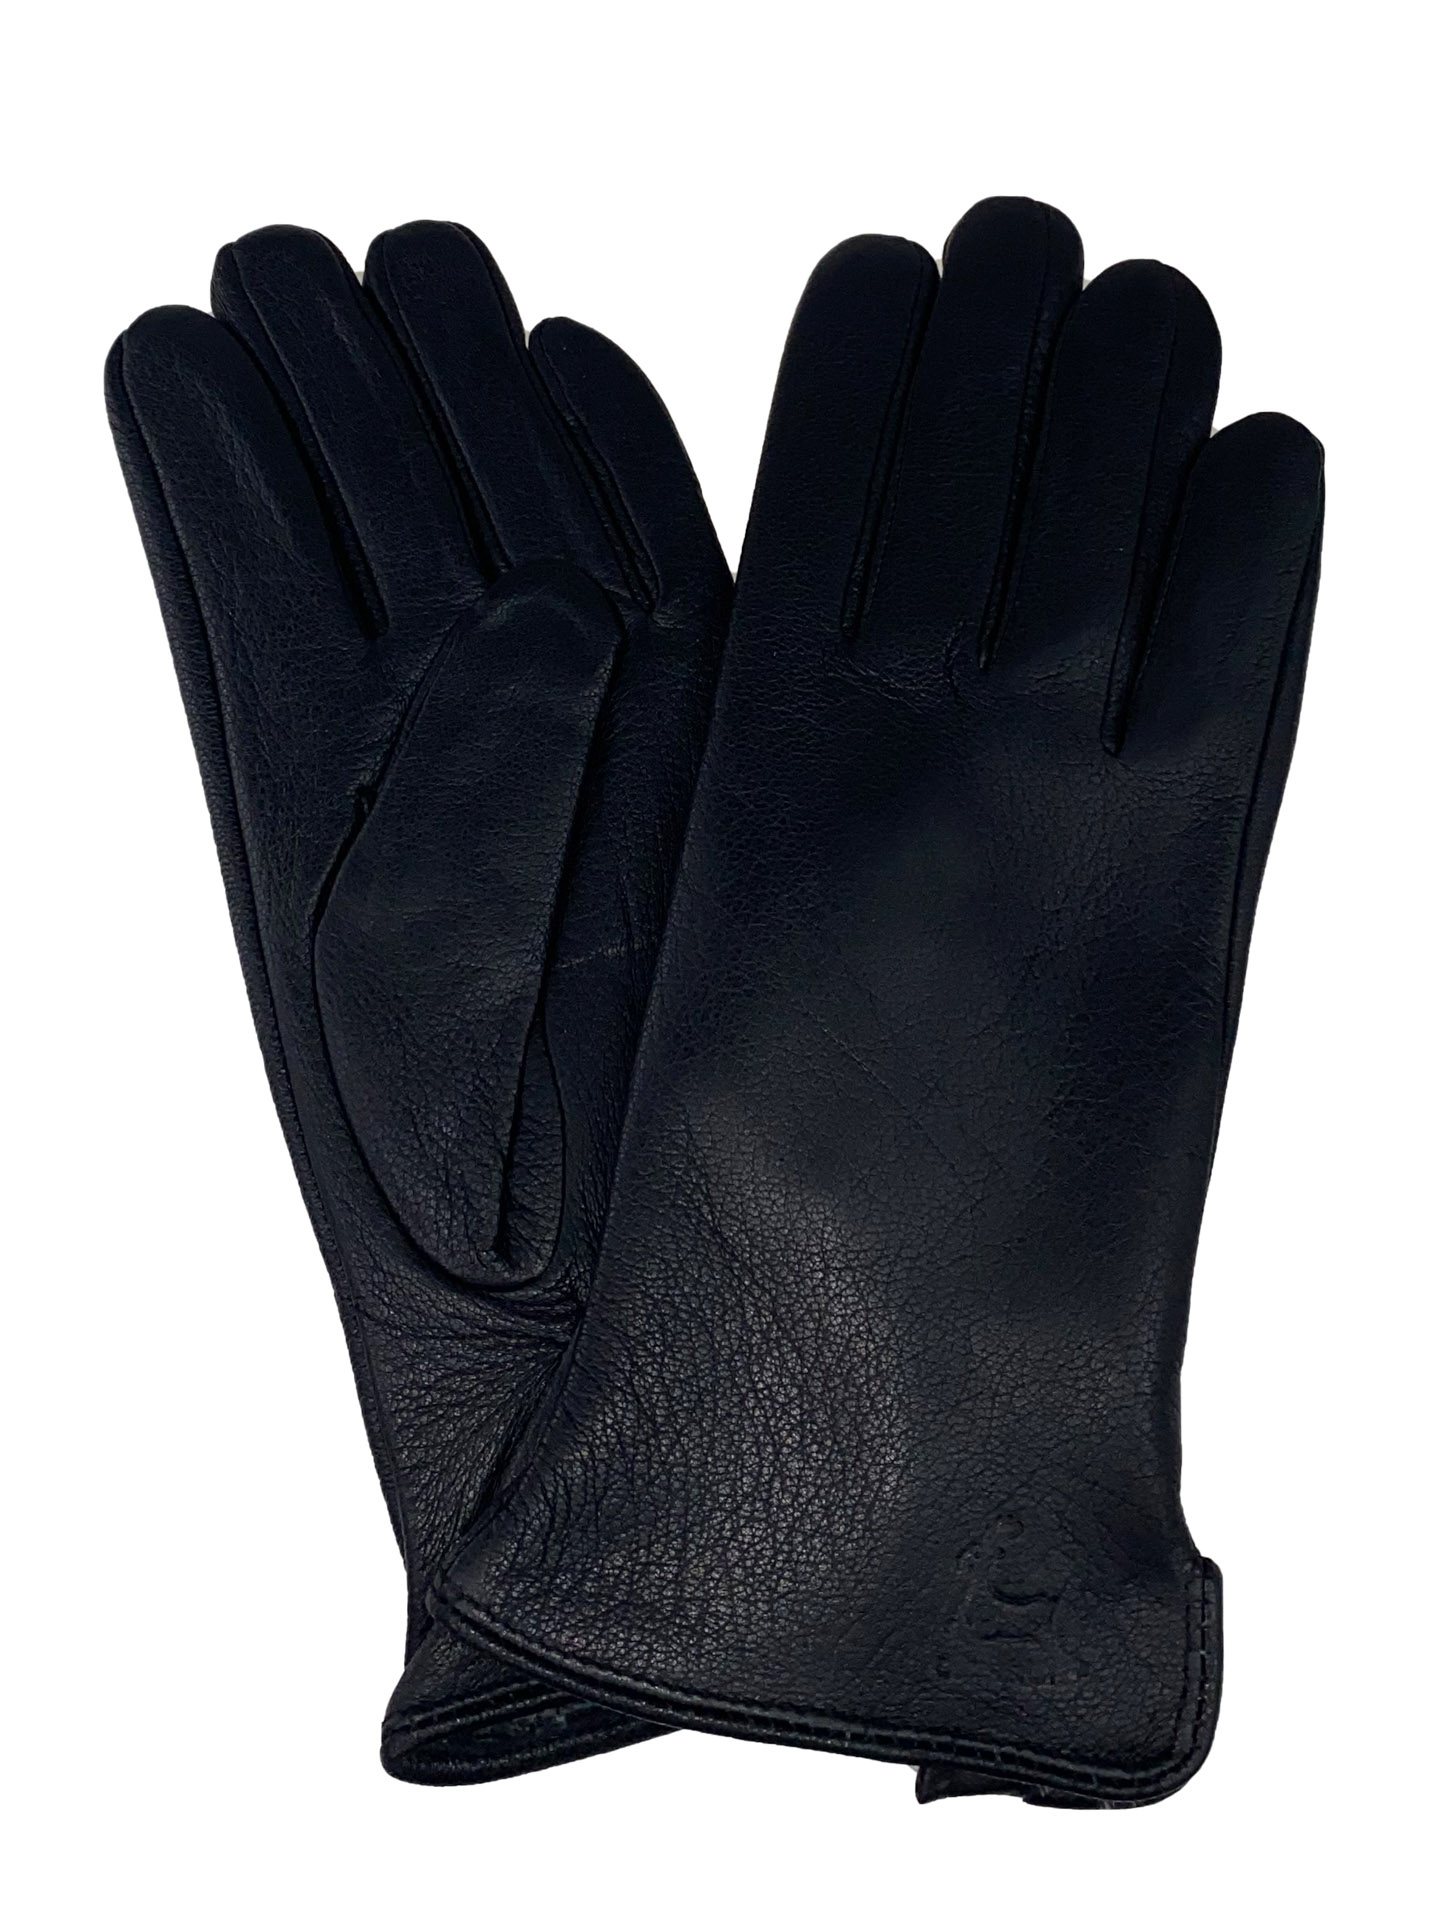 Утеплённые женские перчатки из натуральной кожи оленя, цвет чёрный